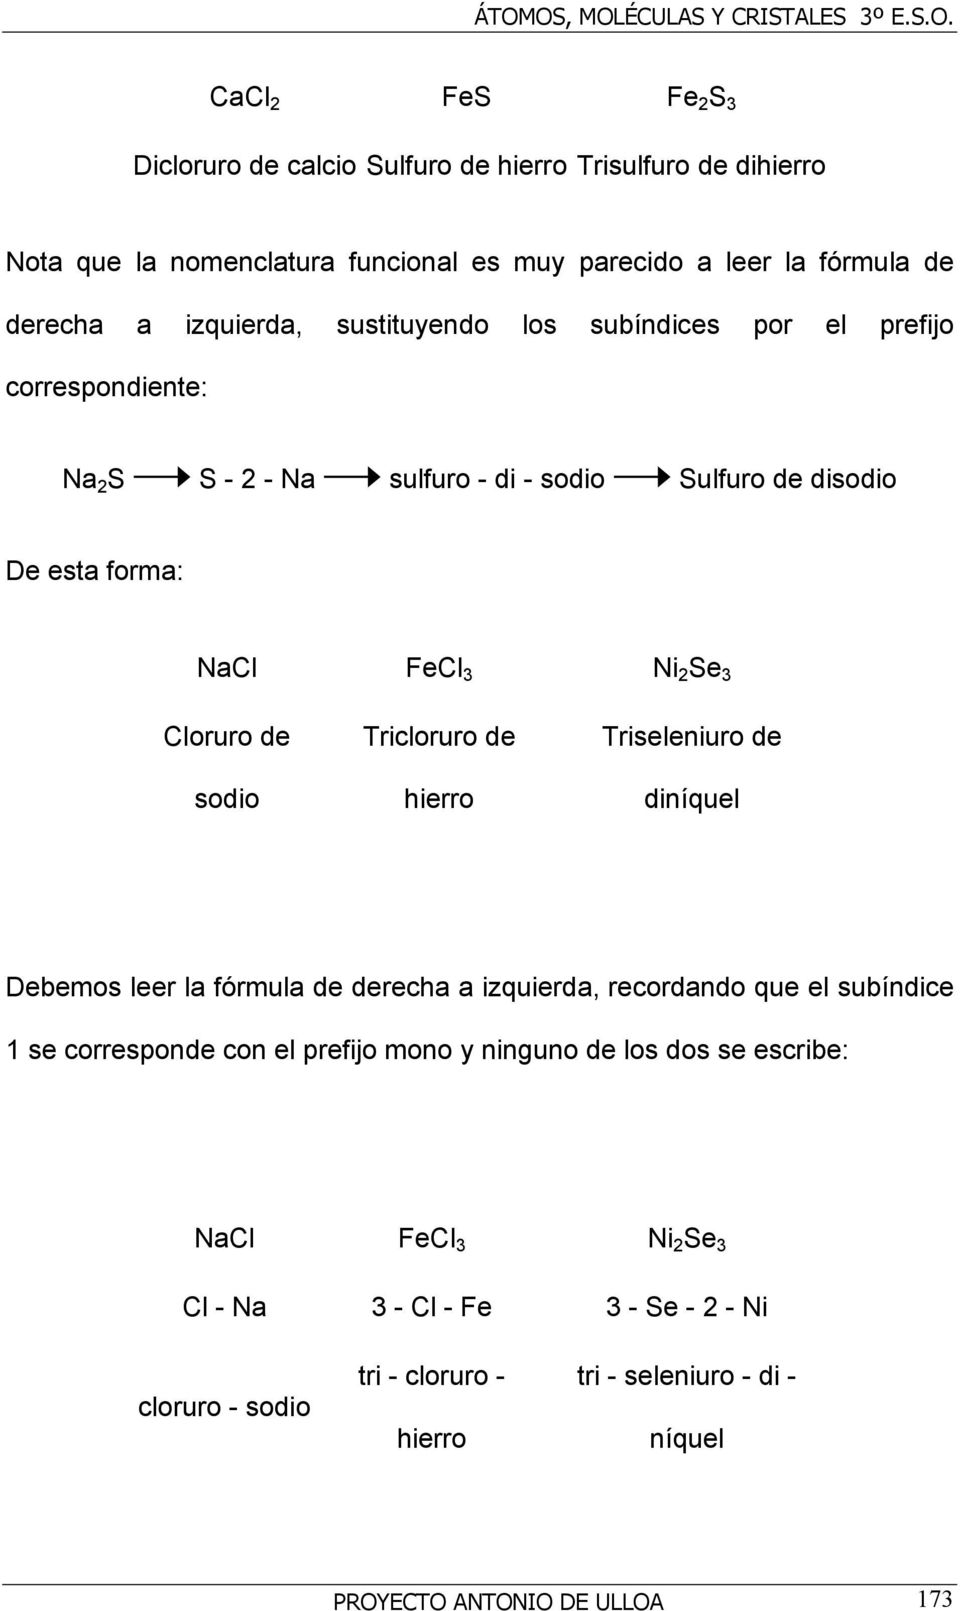 Tricloruro de hierro Triseleniuro de diníquel Debemos leer la fórmula de derecha a izquierda, recordando que el subíndice 1 se corresponde con el prefijo mono y ninguno de